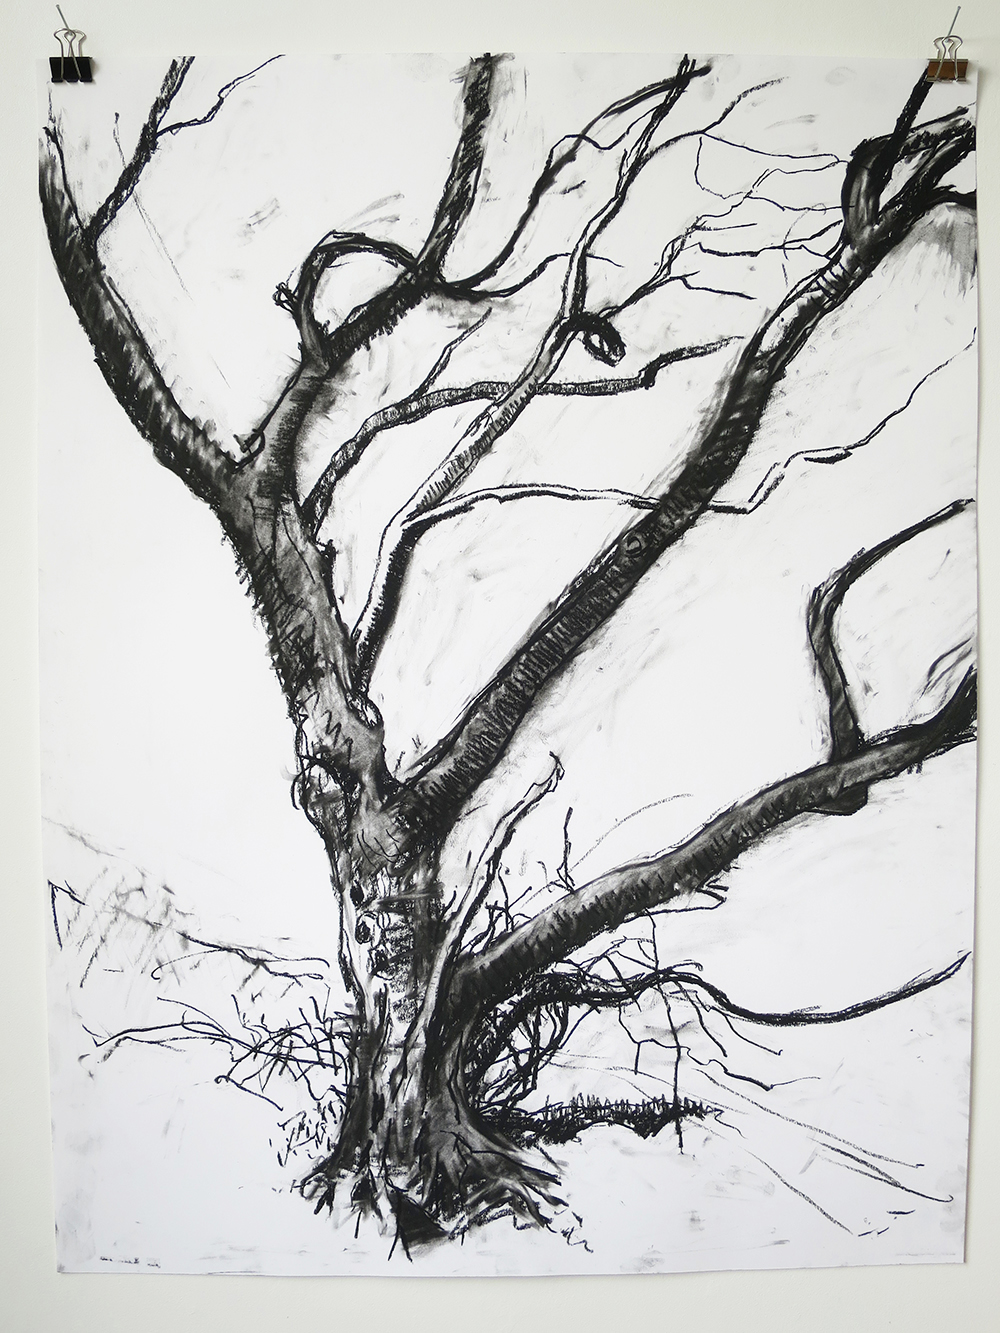 Tree drawings (lockdown) 2020/21 (compressed charcoal drawings)